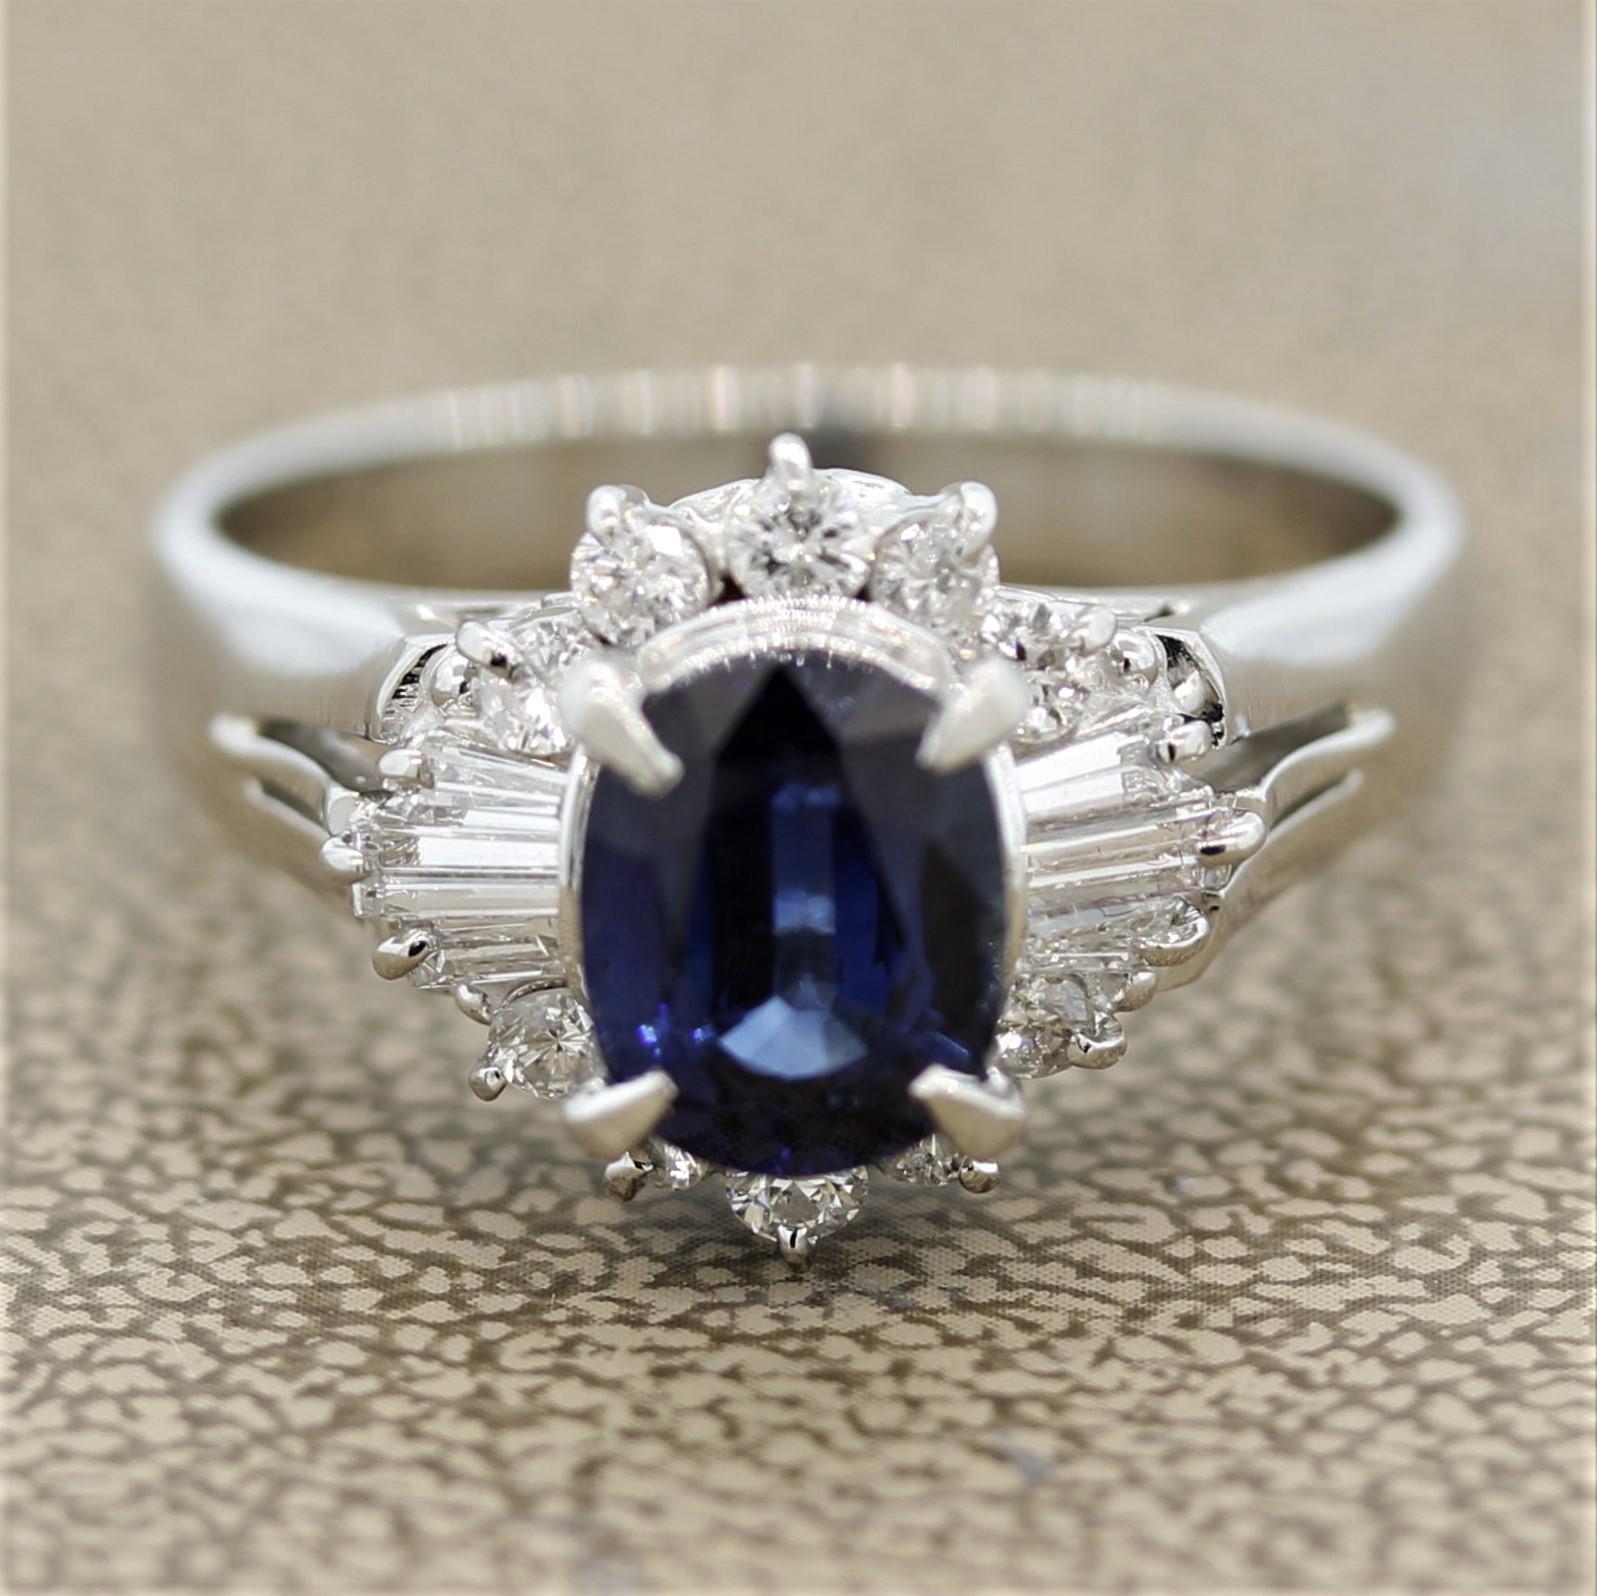 Ein schöner Ring mit einem ovalen Saphir von 2,07 Karat. Er hat eine süße und lebendige blaue Farbe und ist frei von sichtbaren Einschlüssen. Er ist von 0,61 Karat Diamanten im Baguette- und runden Brillantschliff umgeben, die in einem einzigartigen